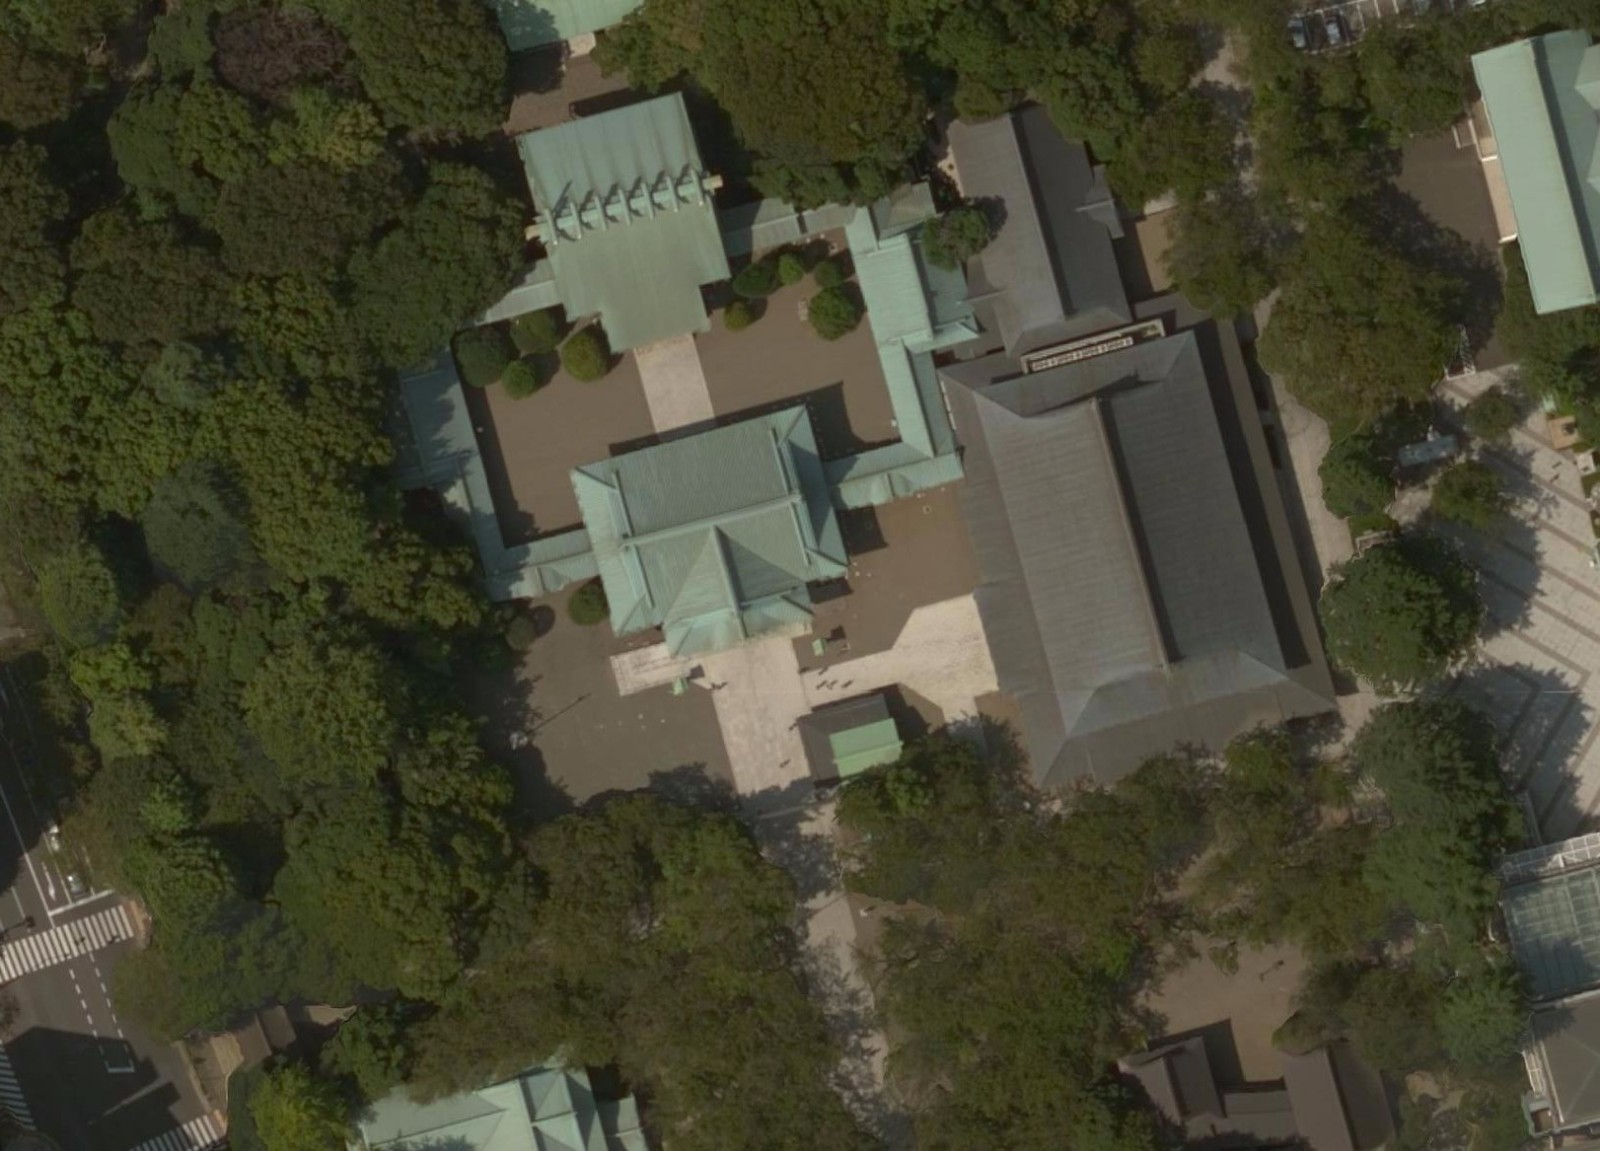 日本靖国神社俯瞰图图片